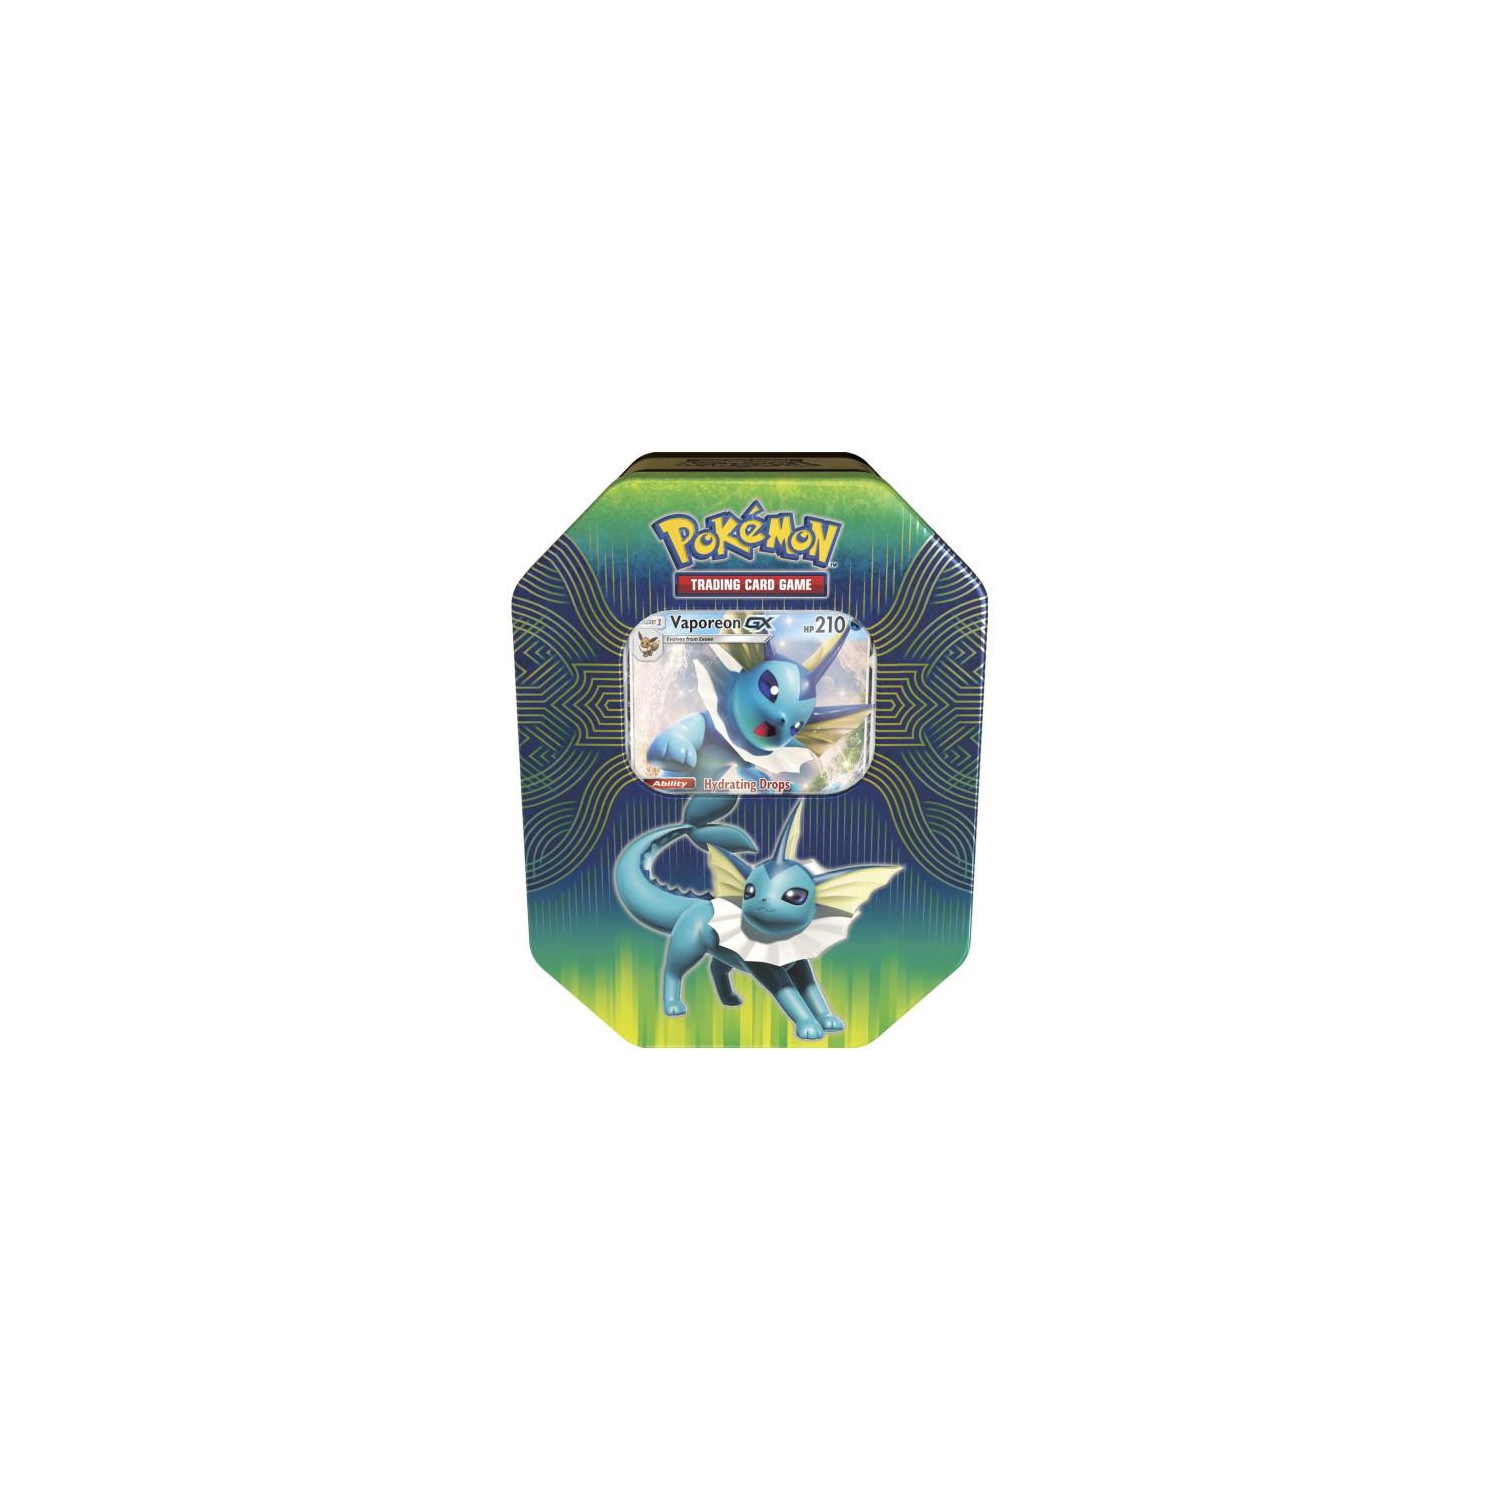 Pokemon TCG: Elemental Power Tin Featuring Vaporeon/Jolteon/Flareon